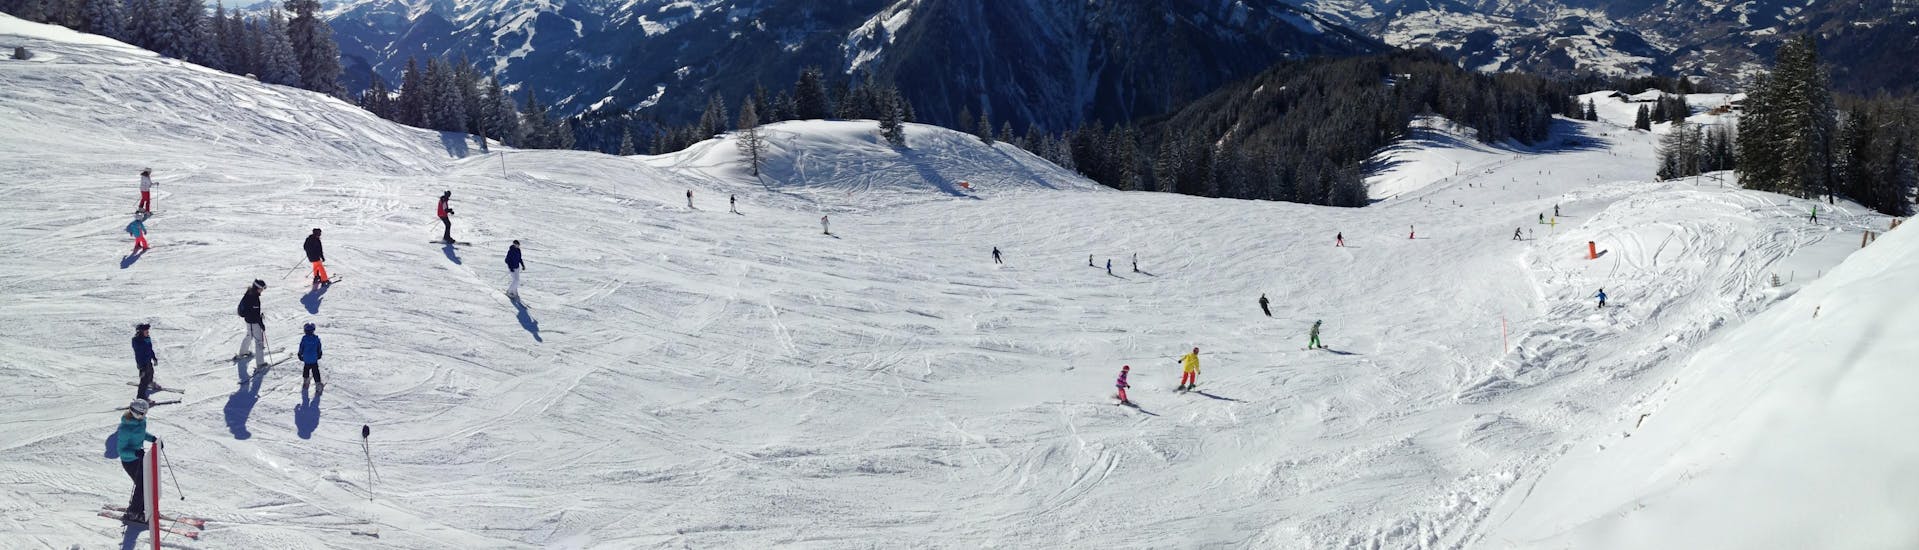 Skiërs genieten van hun skilessen op de pistes van St. Johann-Alpendorf.